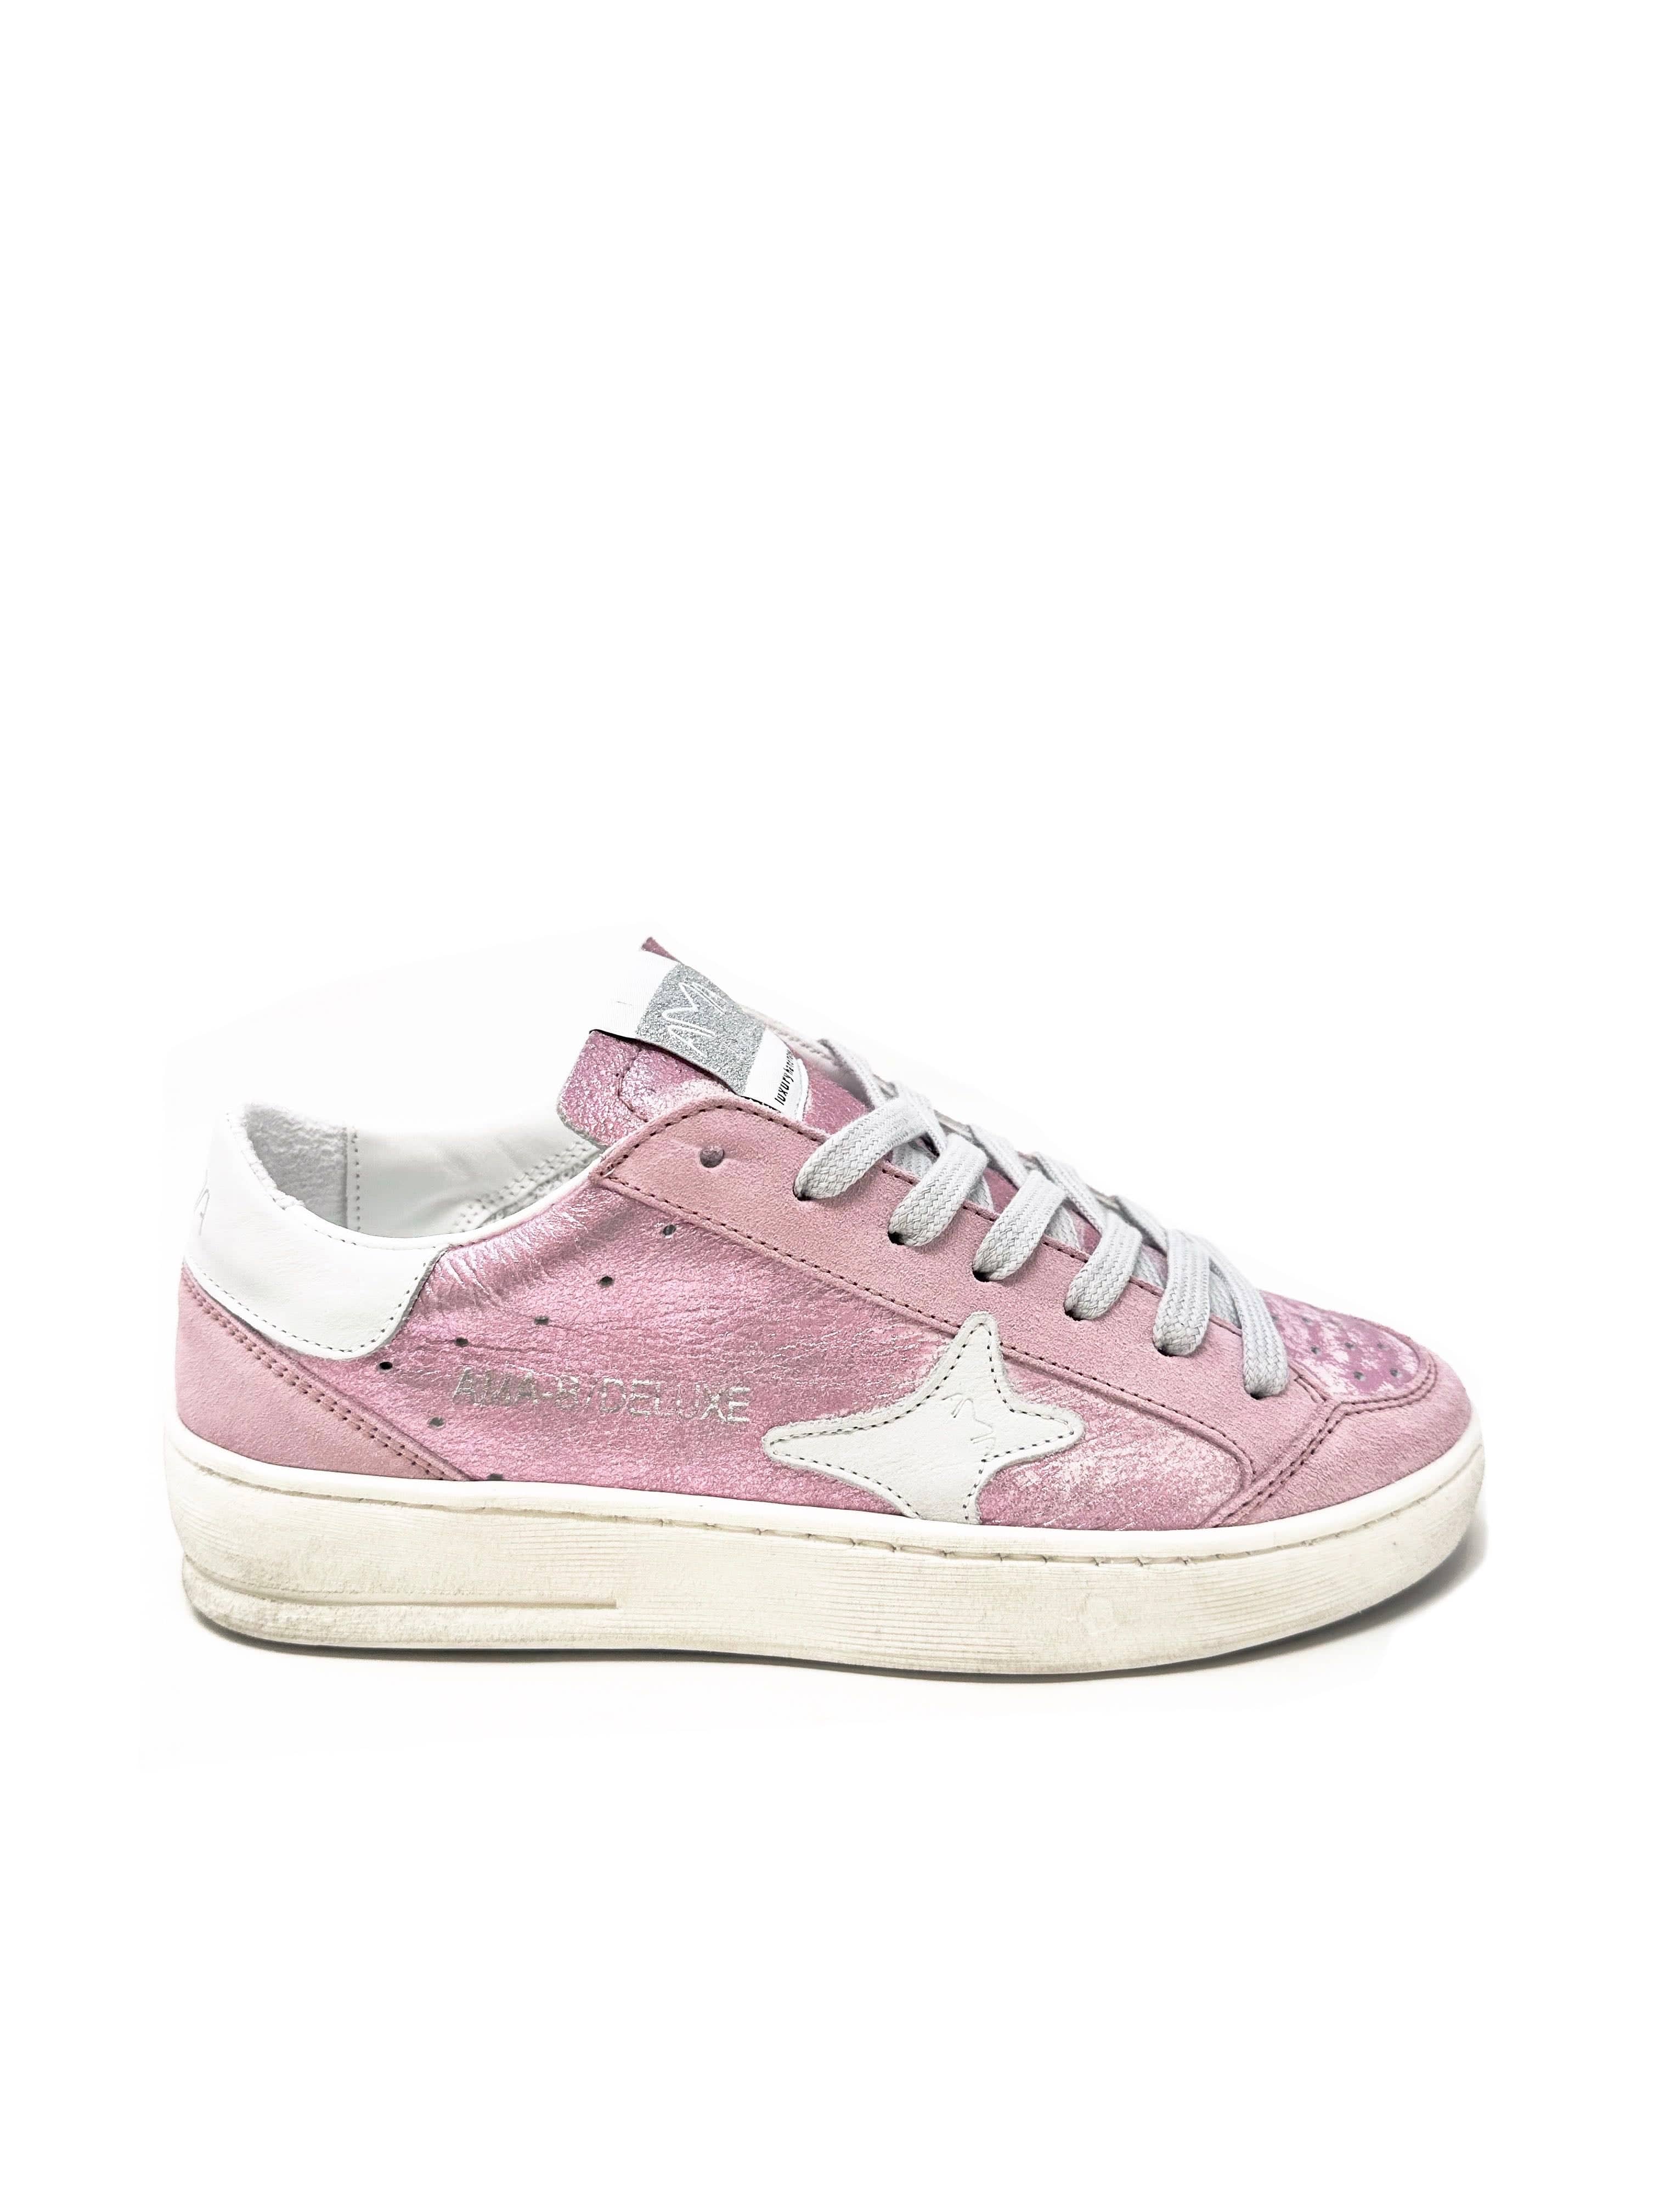 Ama brand sneakers donna in pelle rosa effetto slavato